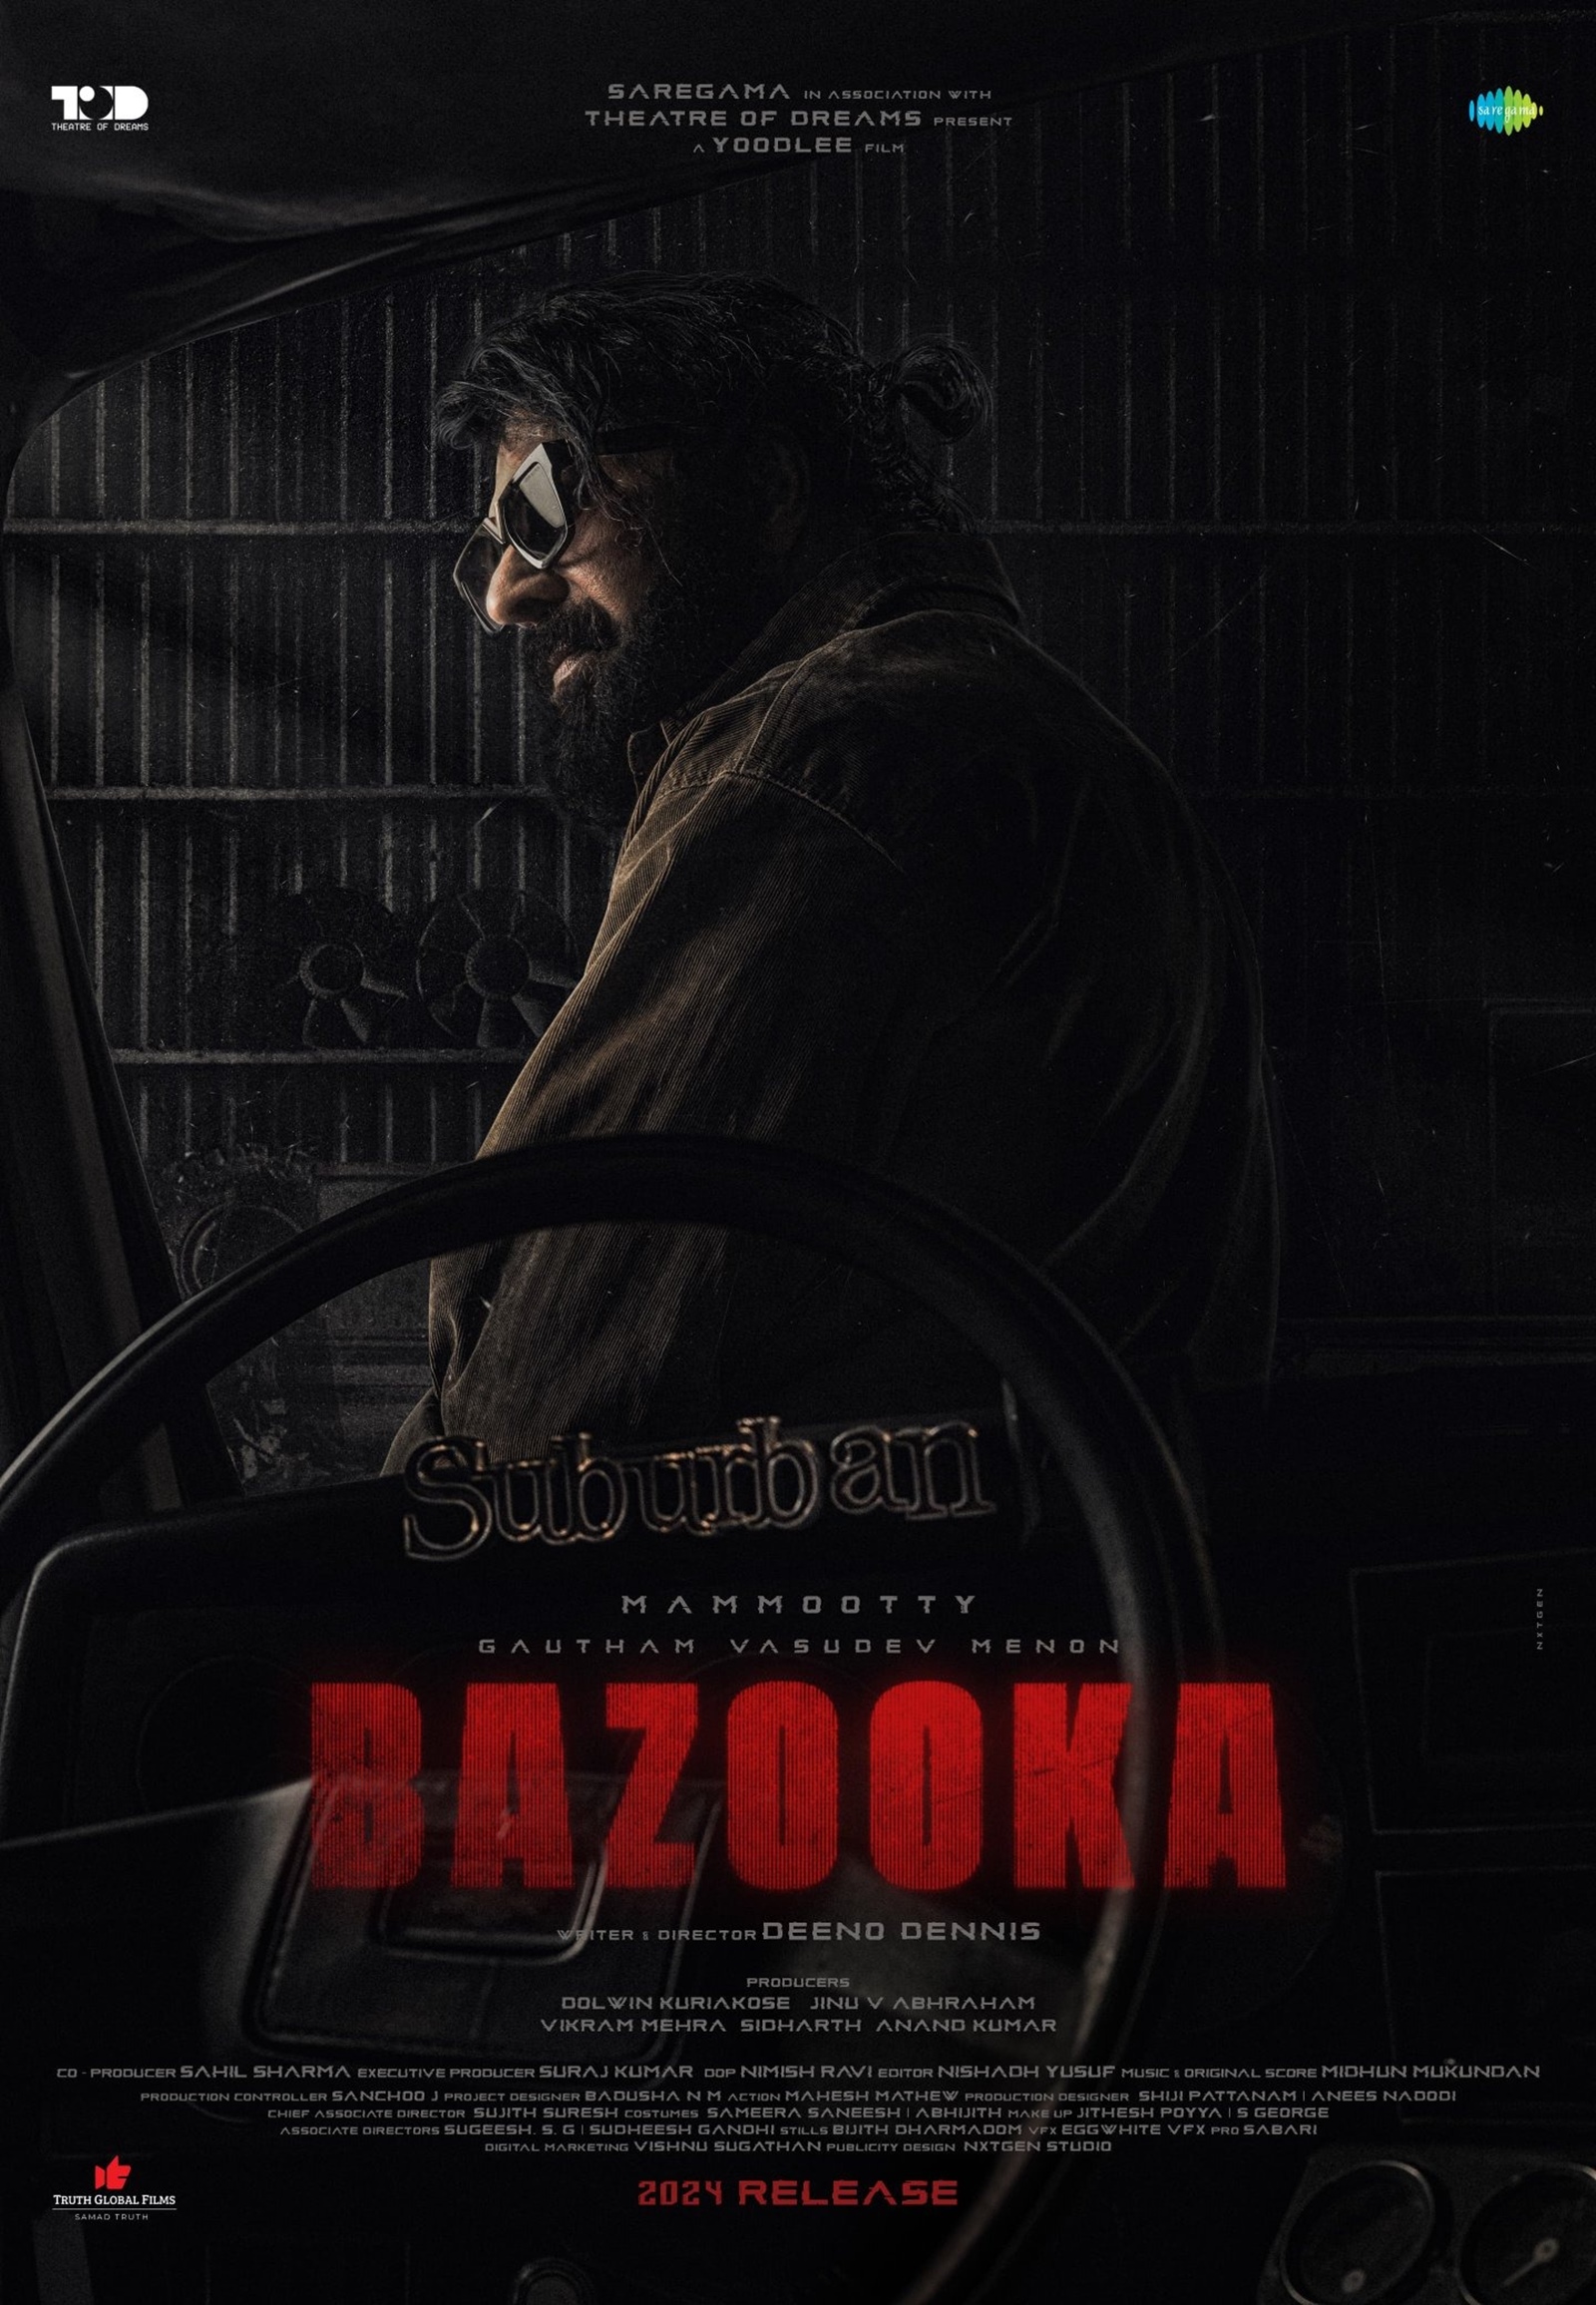 Bazooka, bazooka second look, bazooka first look, bazooka movie, bazooka release date, bazooka movie poster, bazooka movie new poster, mammootty, mammootty movies, mammootty new look, mammootty new movie